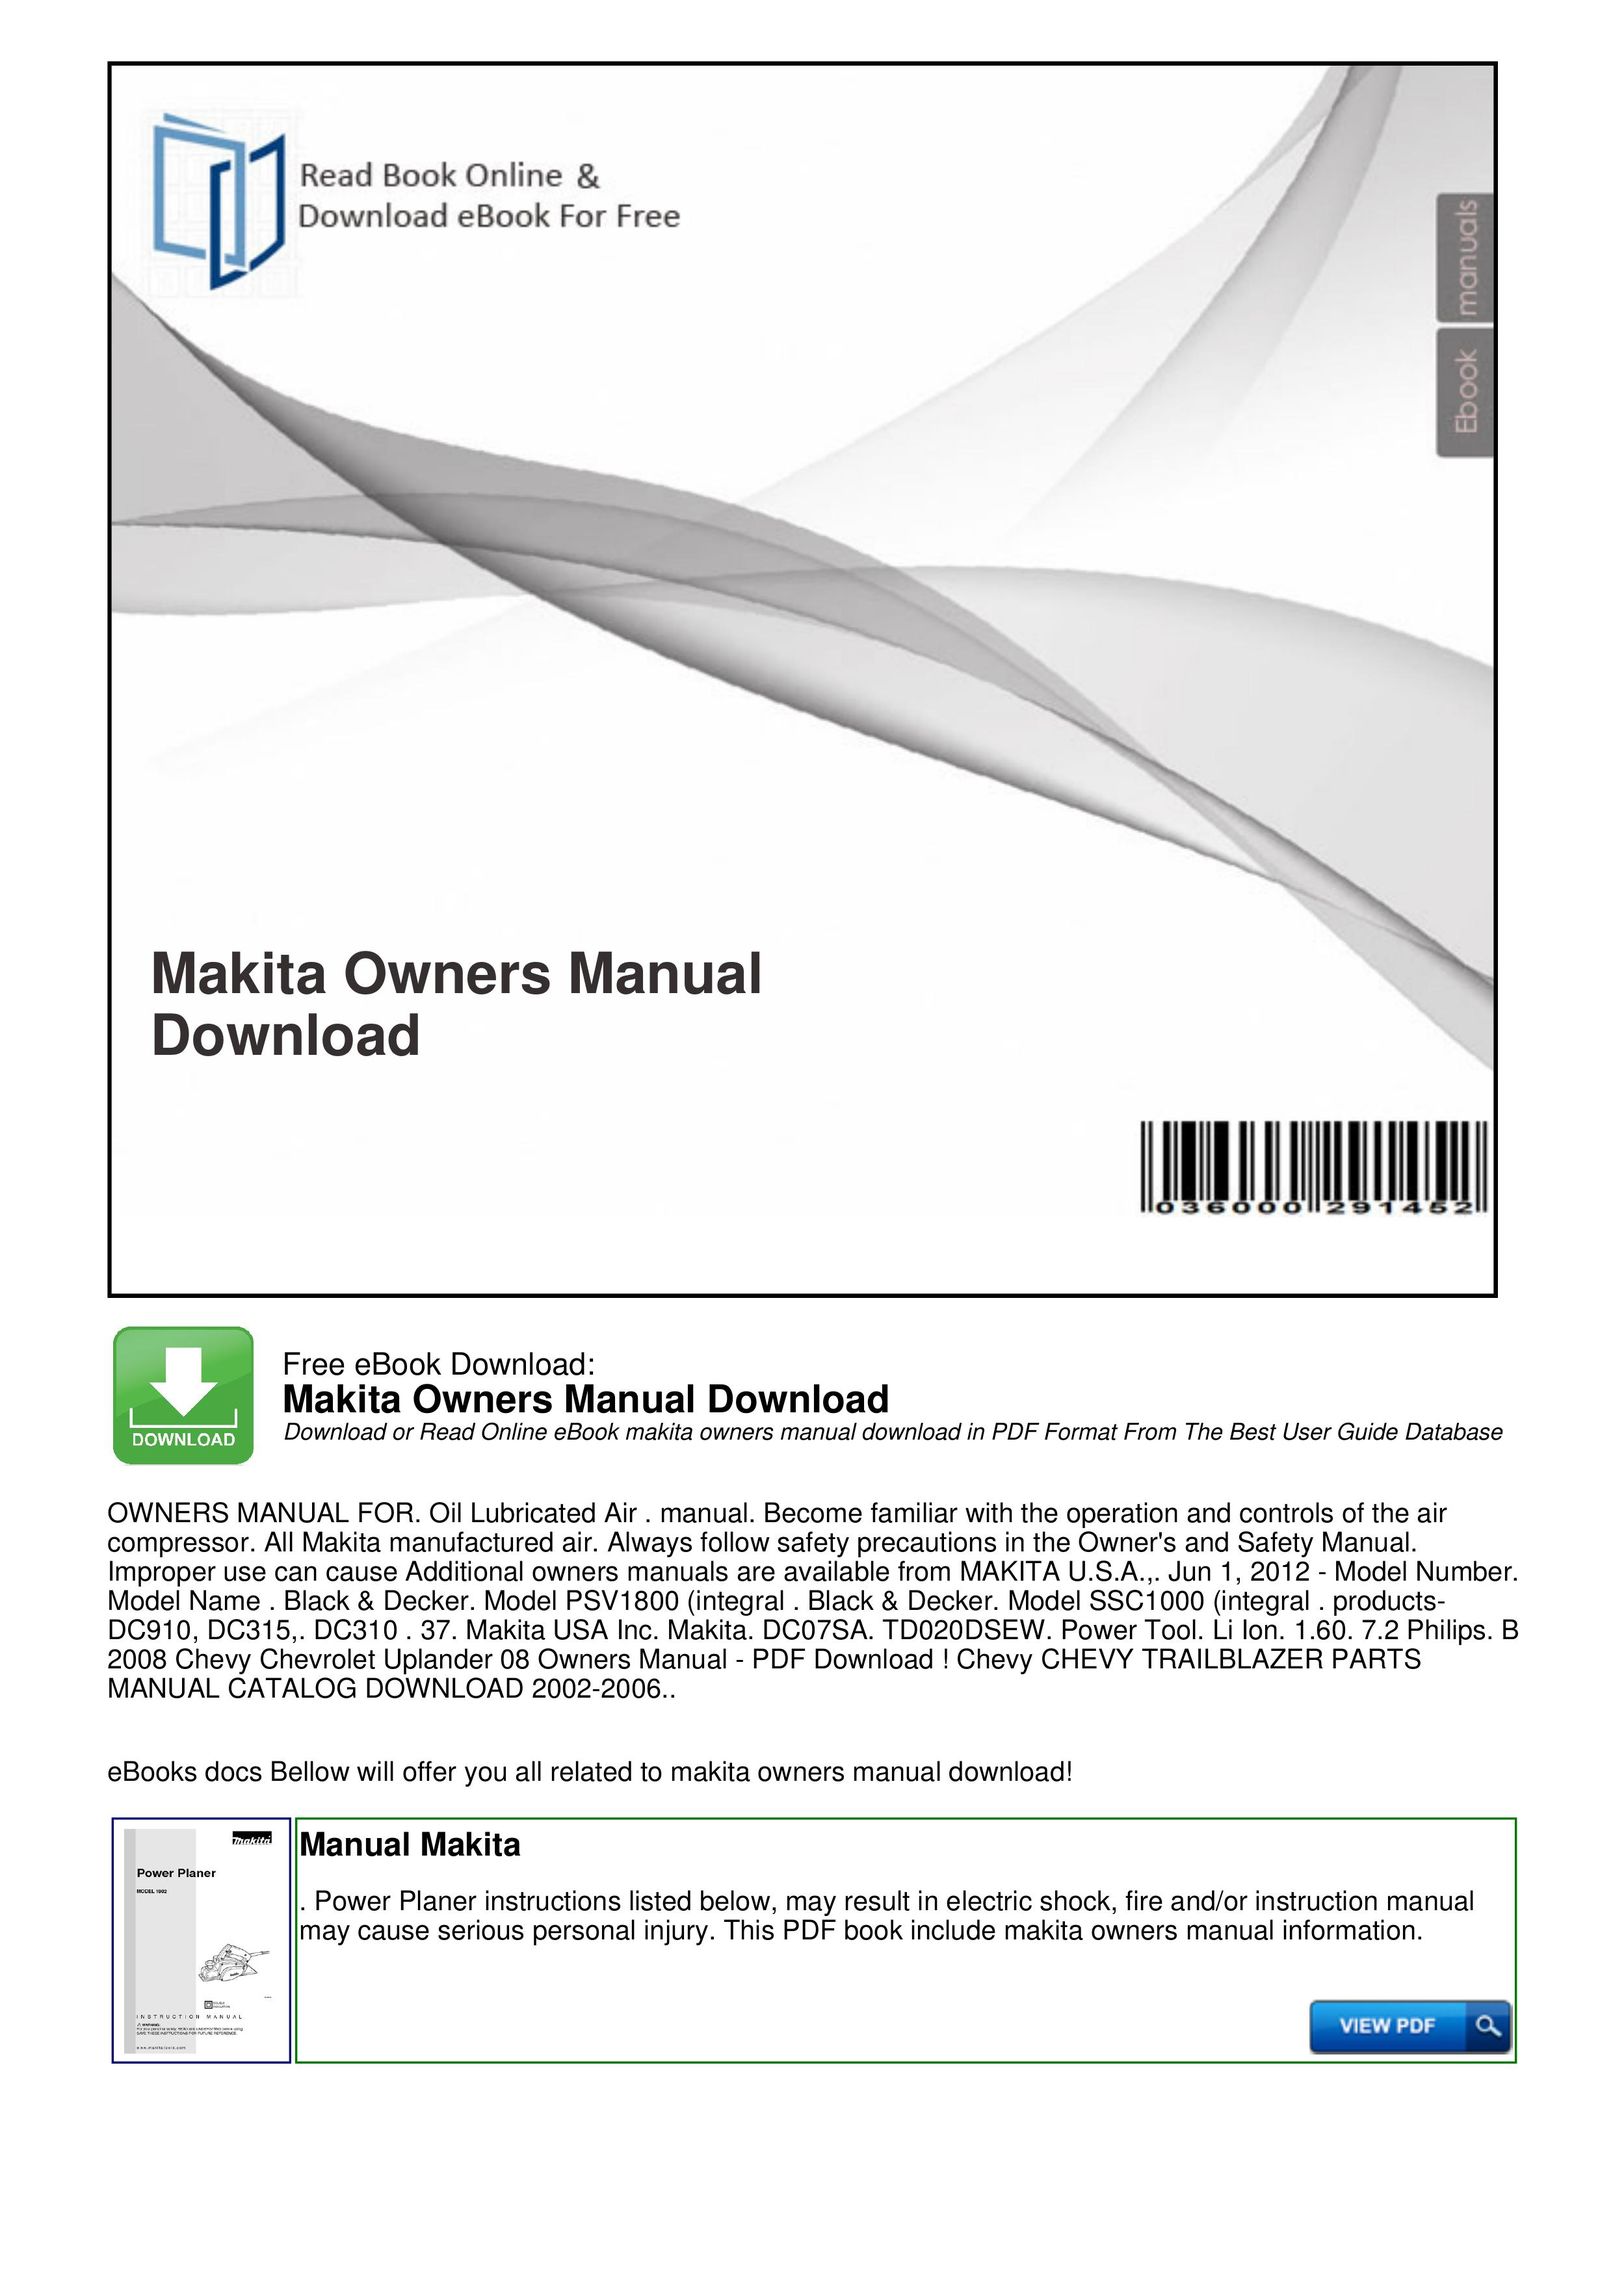 Makita DC910 eBook Reader User Manual